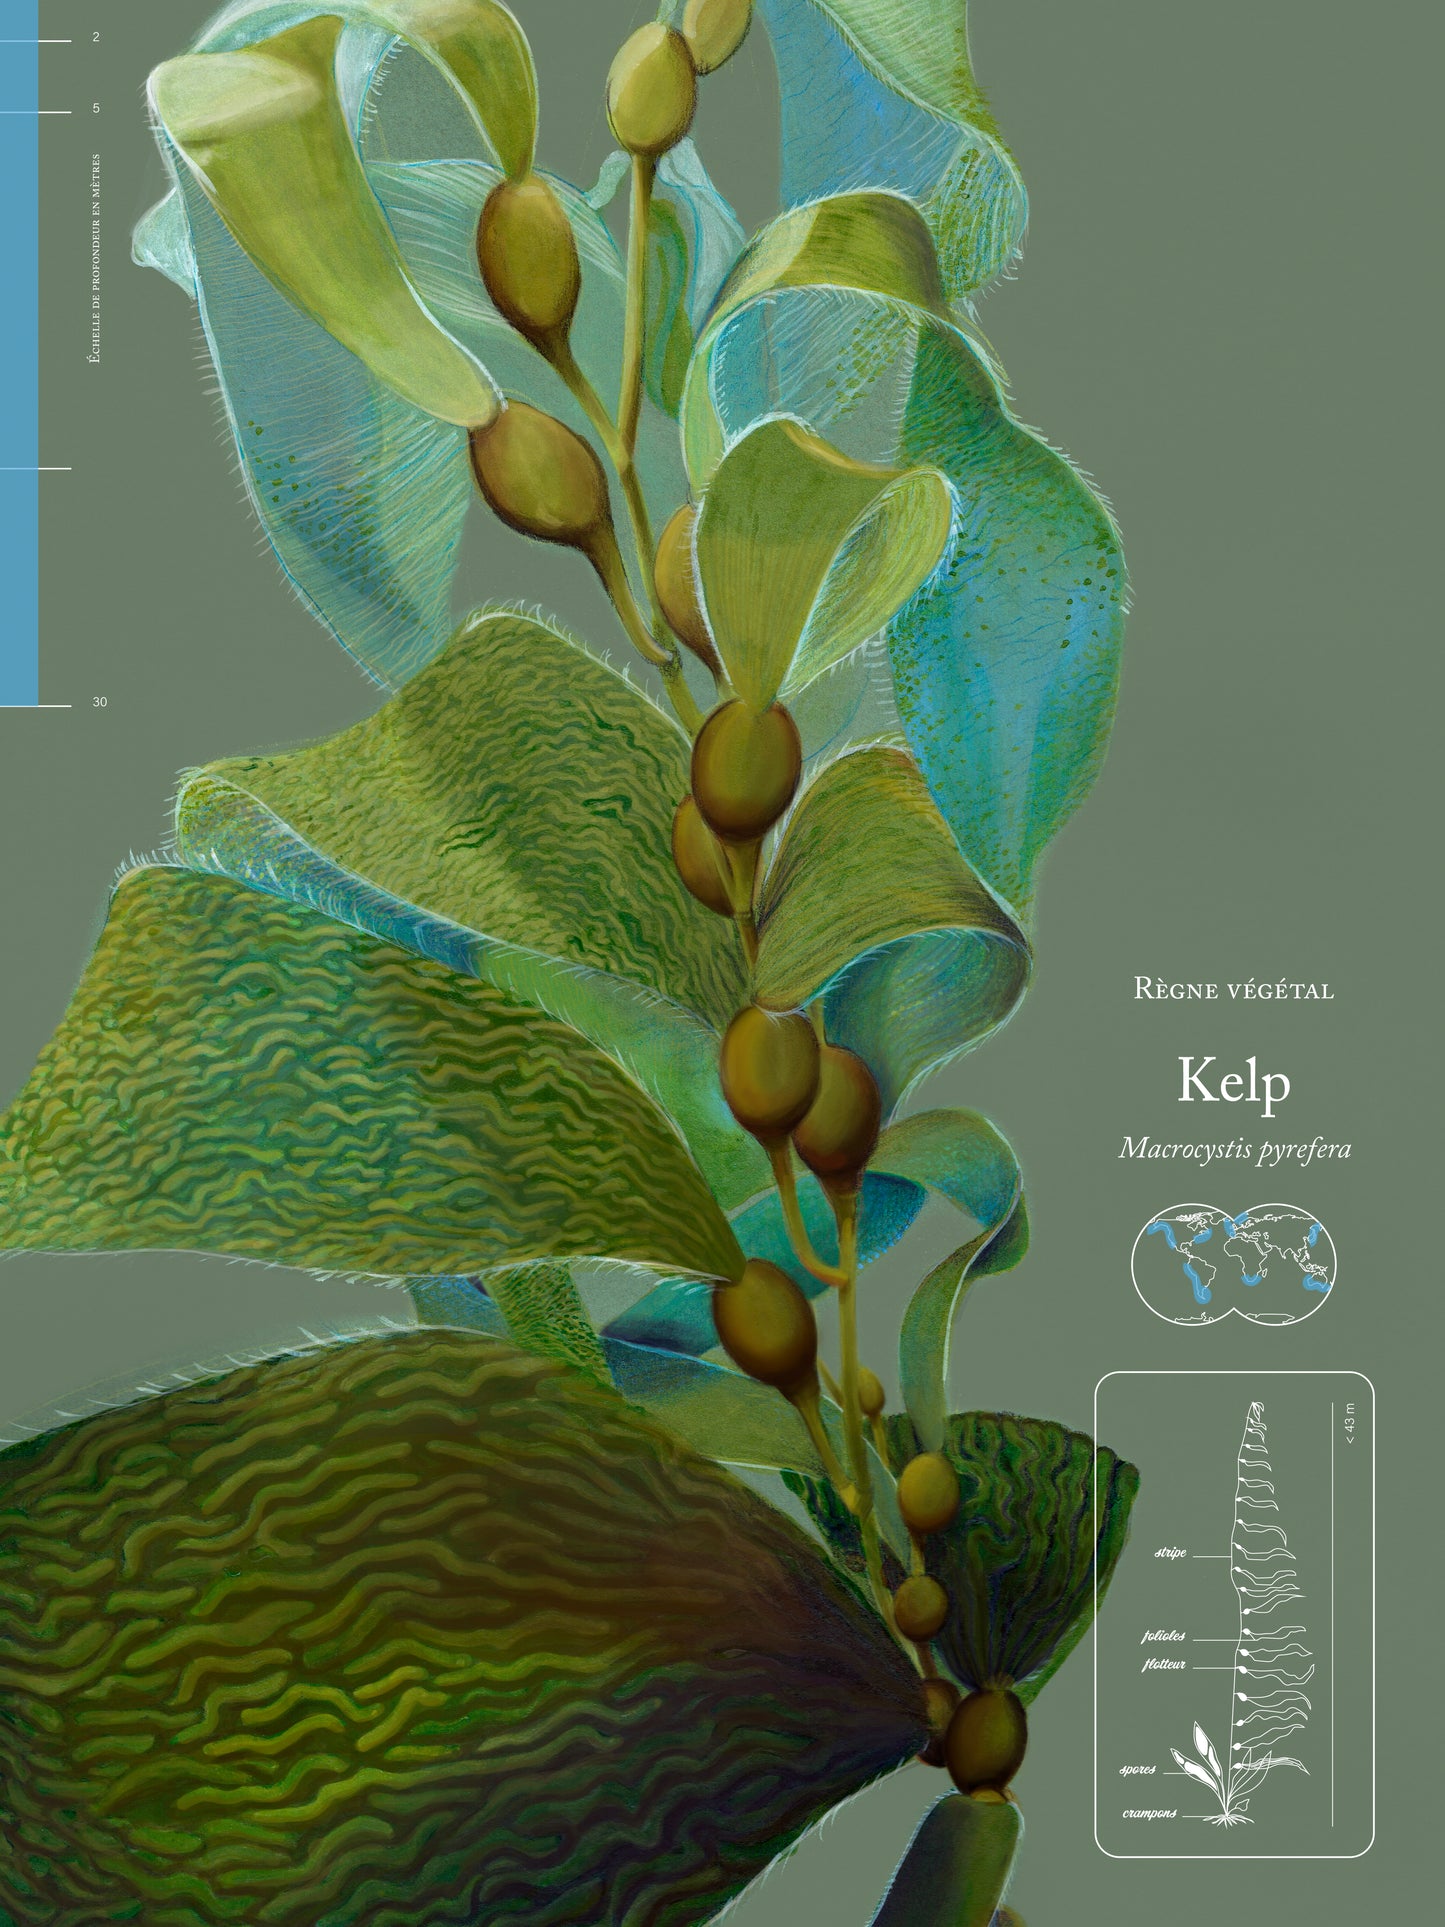 Kelp leaves